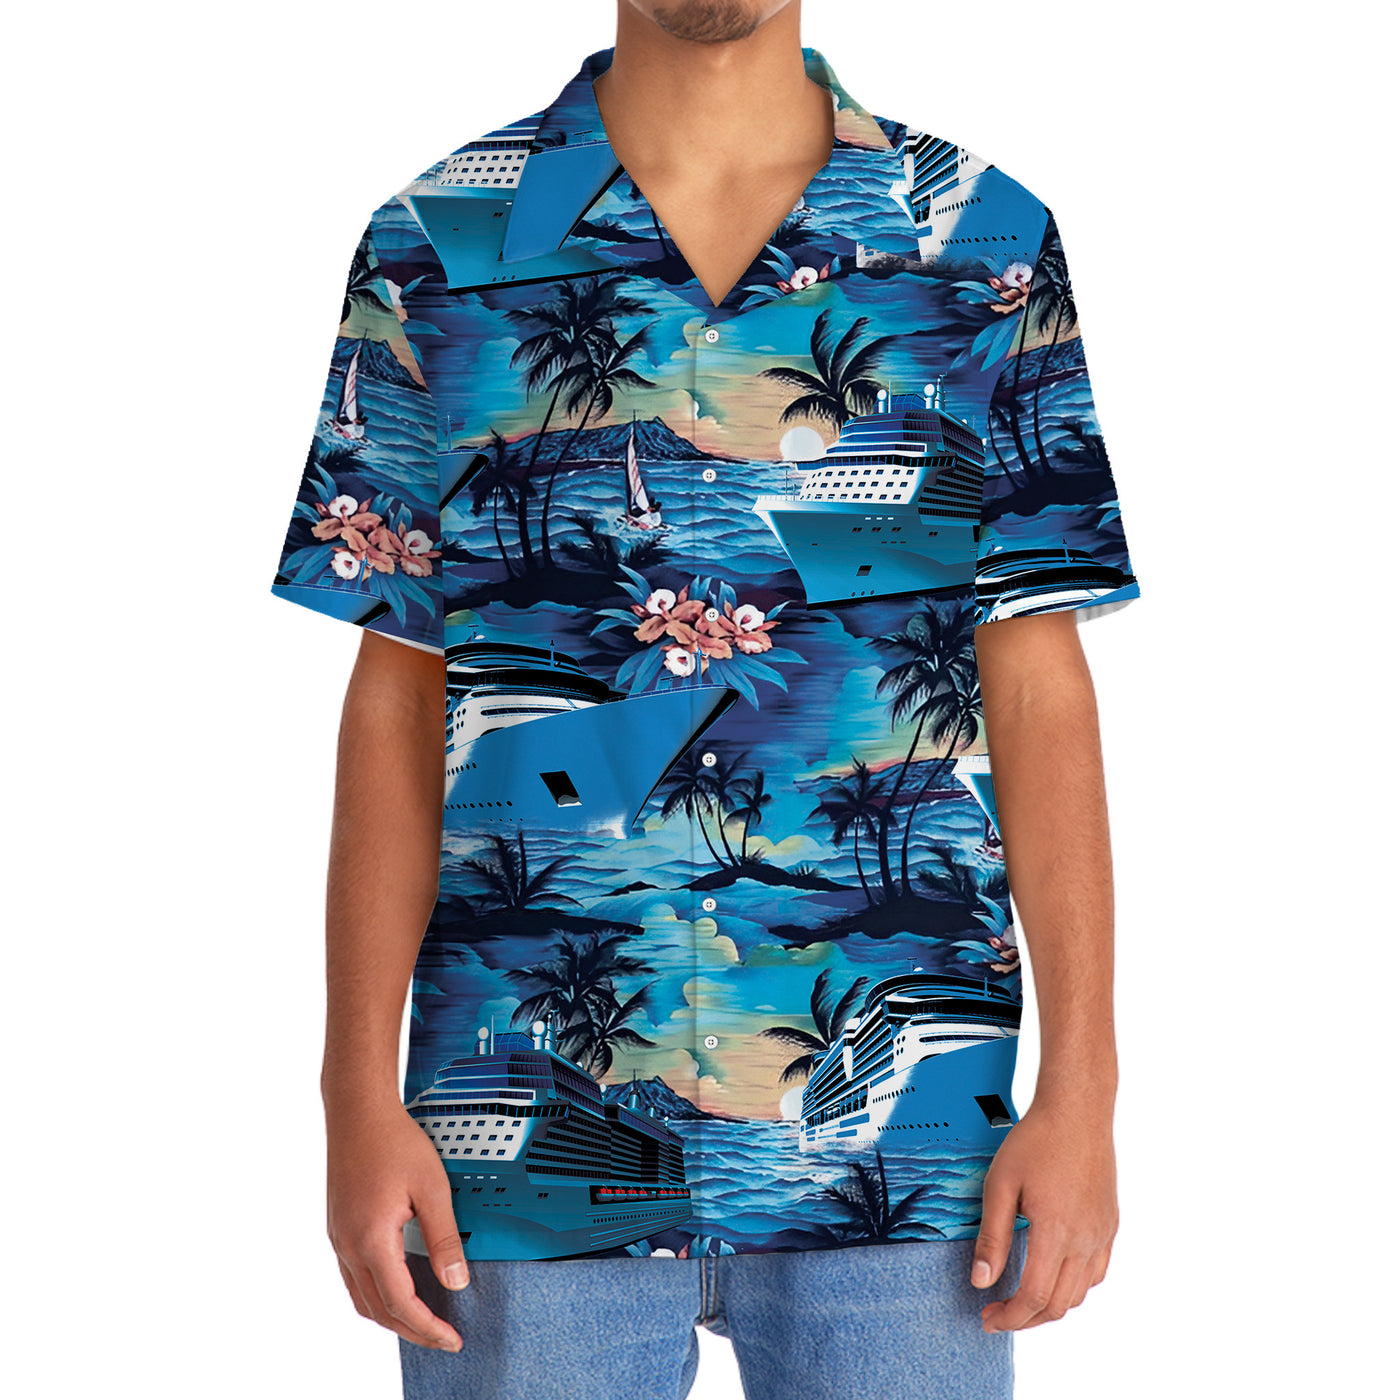 Blue Cruise Hawaiian Shirt